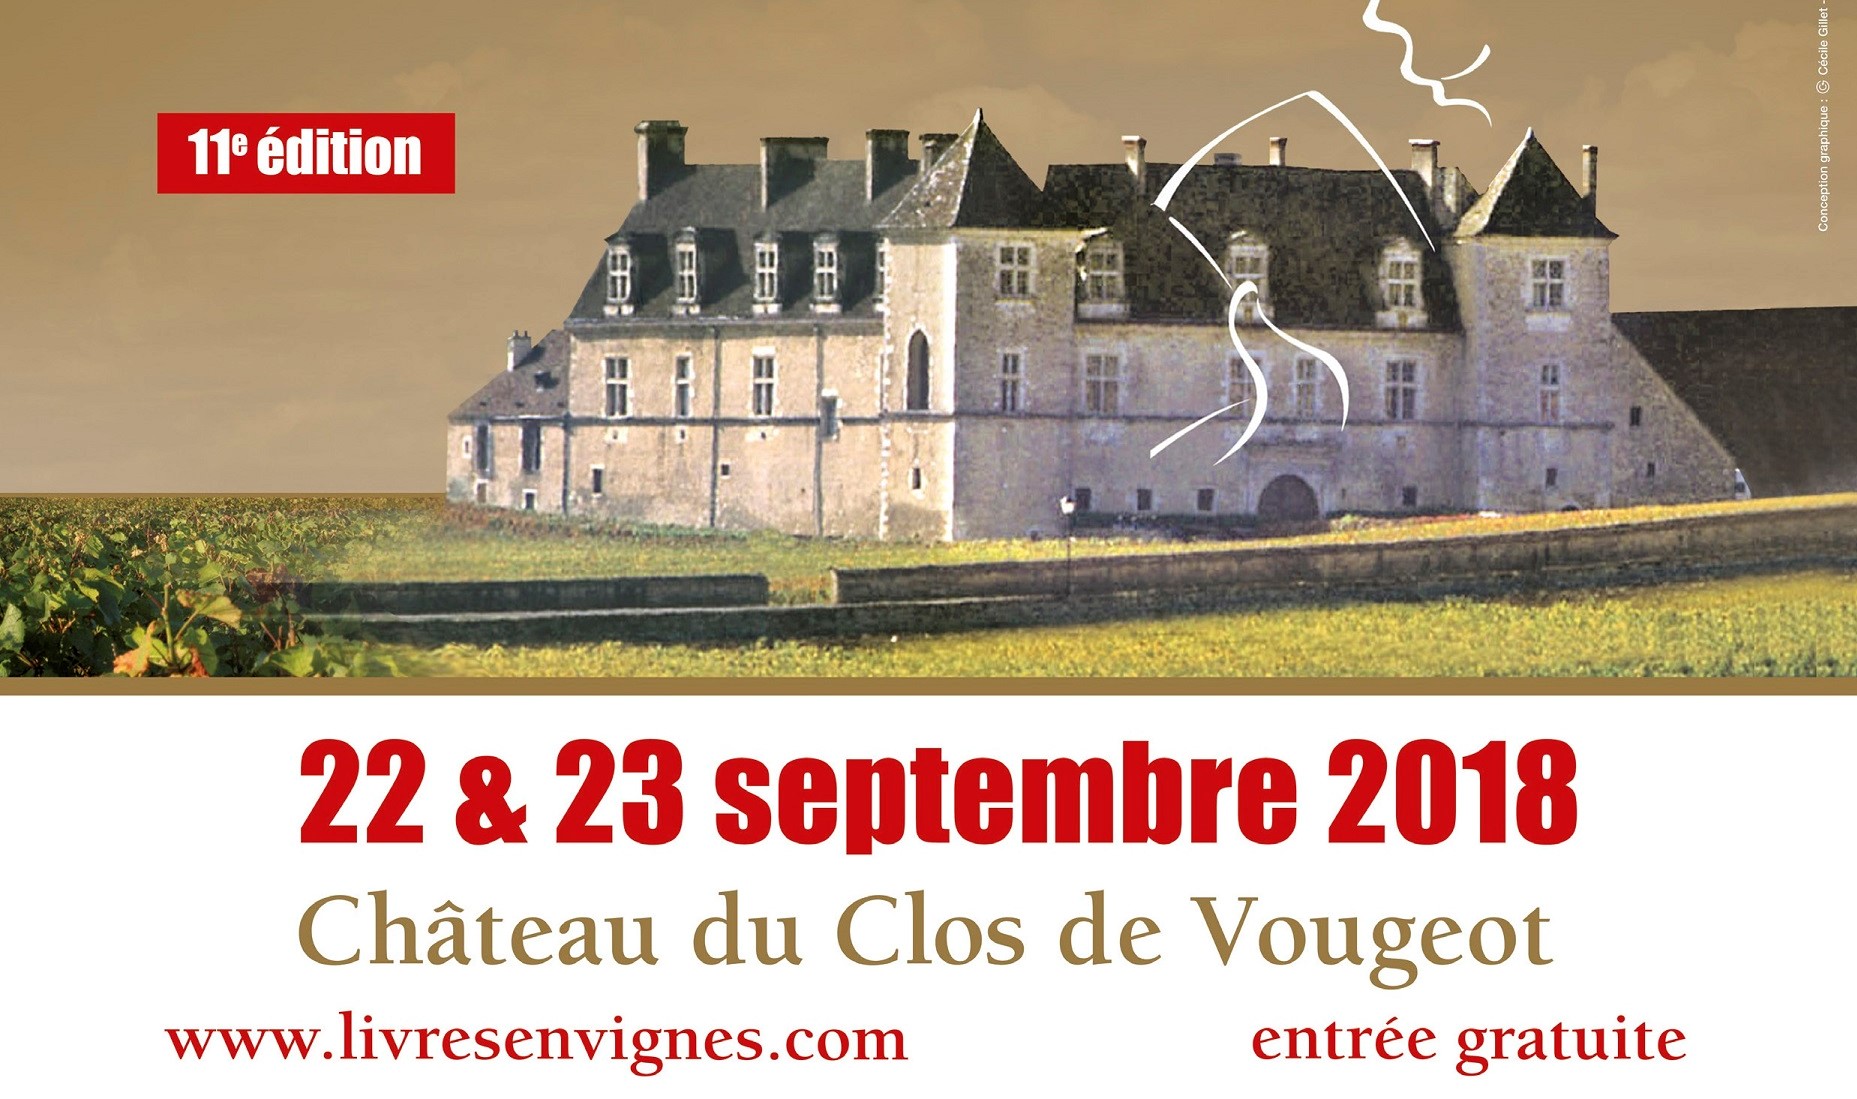 Salon Livres en Vignes au château du Clos de Vougeot, festival littéraire et gastronomique.